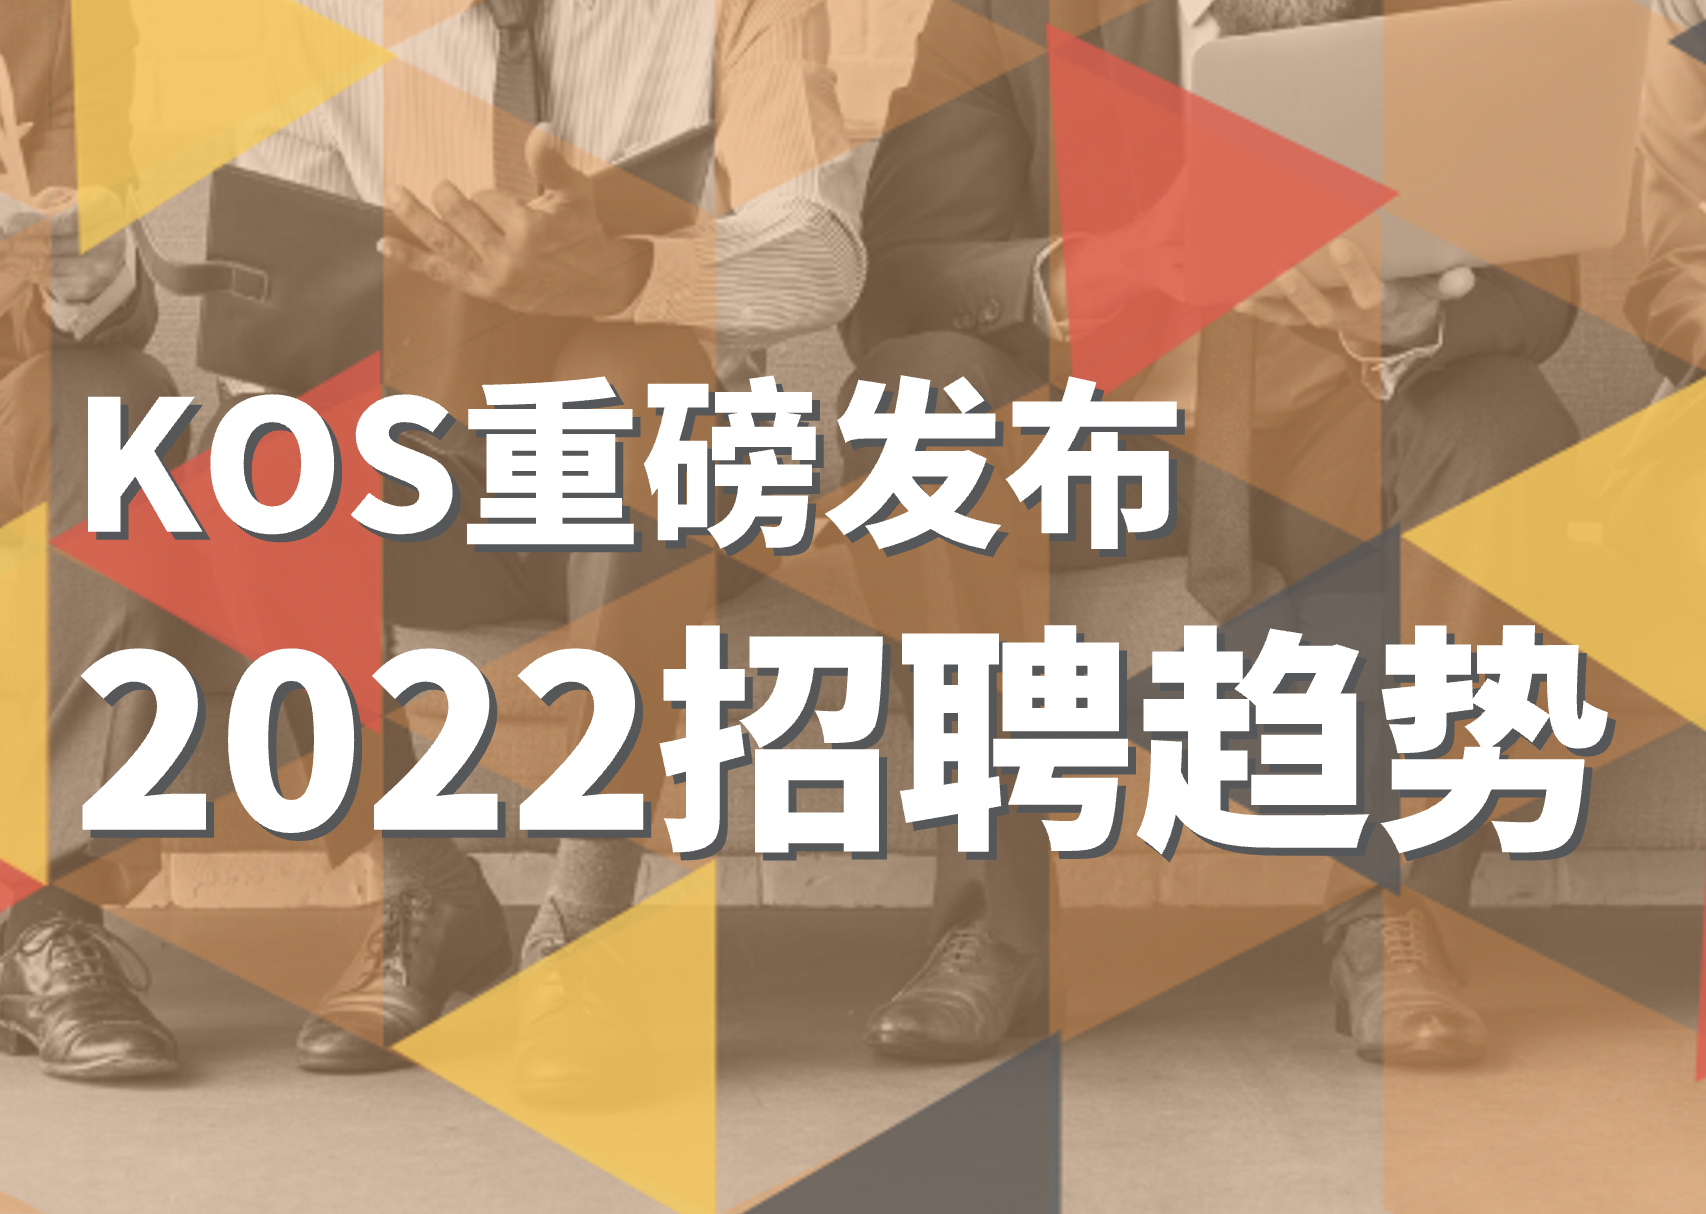 KOS重磅发布《2022中国人才招聘市场趋势白皮书》